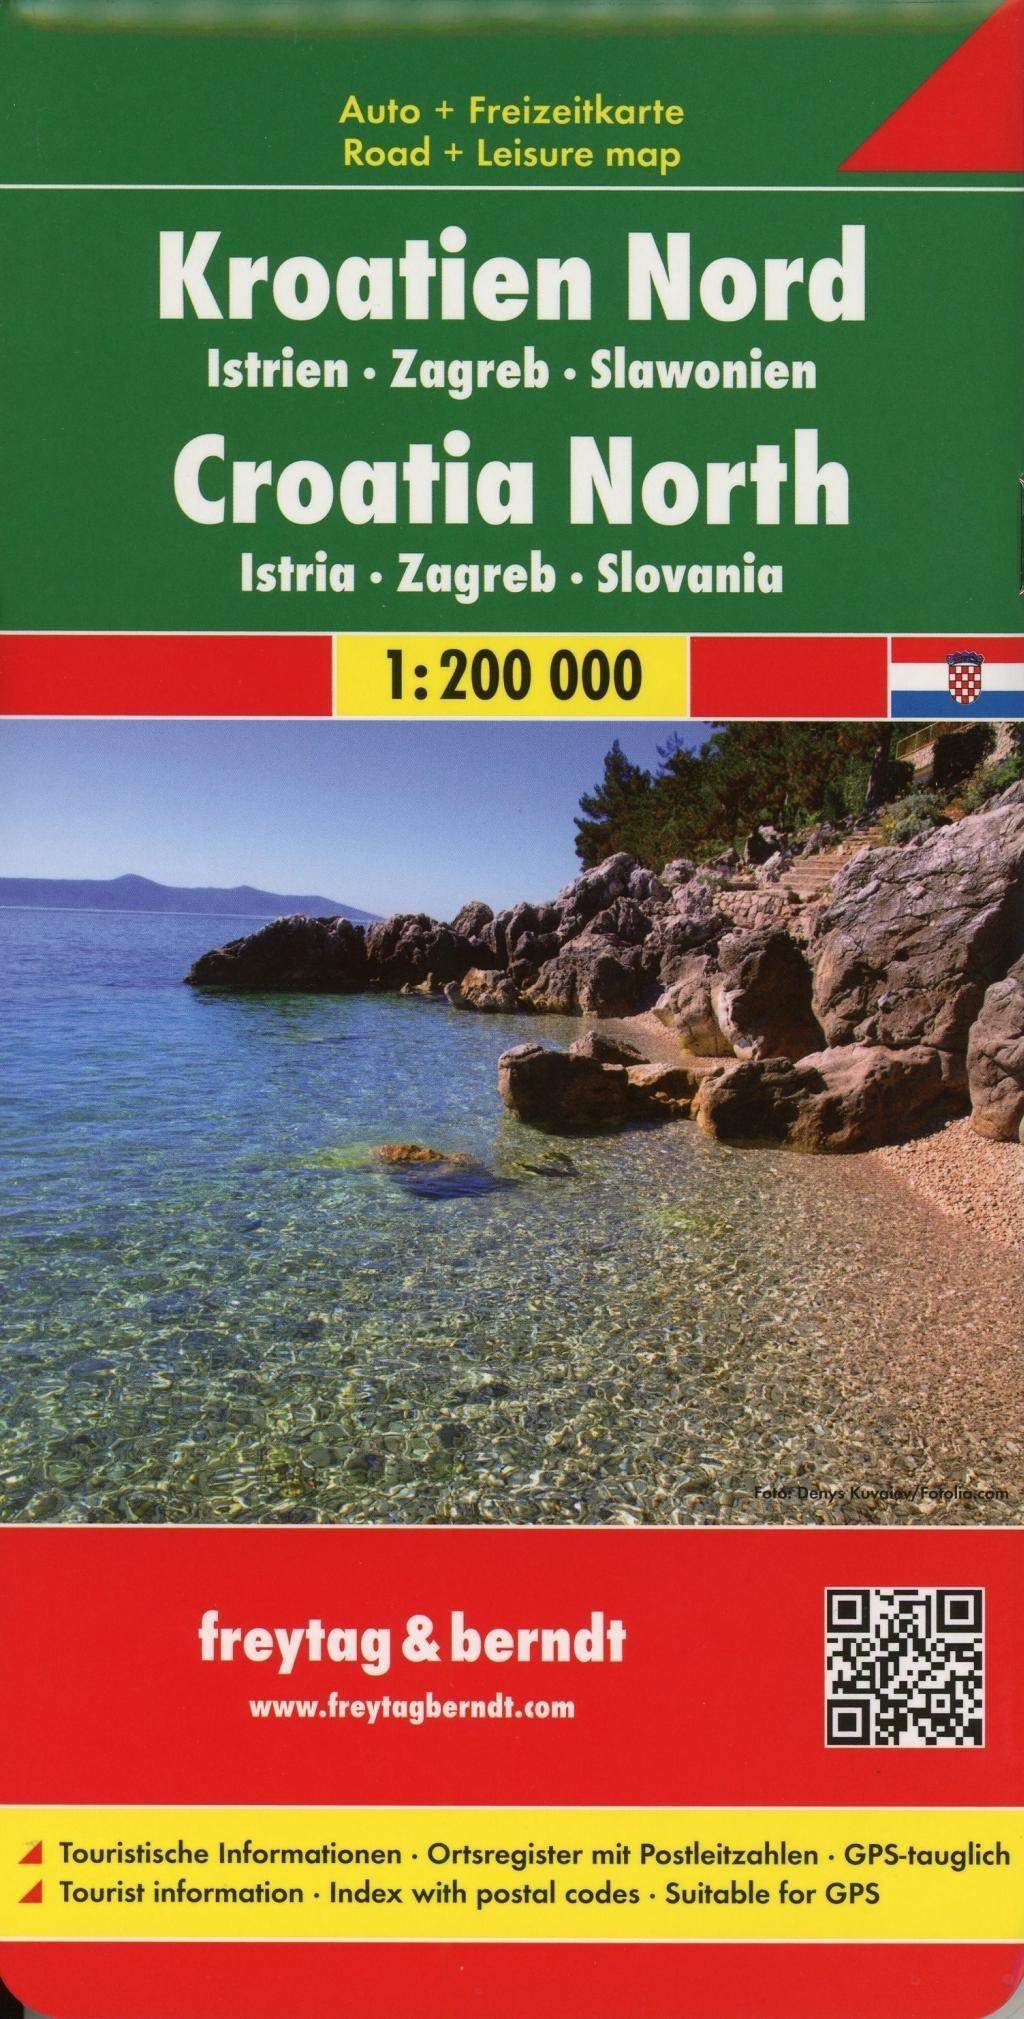 AK 0721 Auto karte Croazia costa nord 1:200.000 Set wegenkaarten 1:150 000 